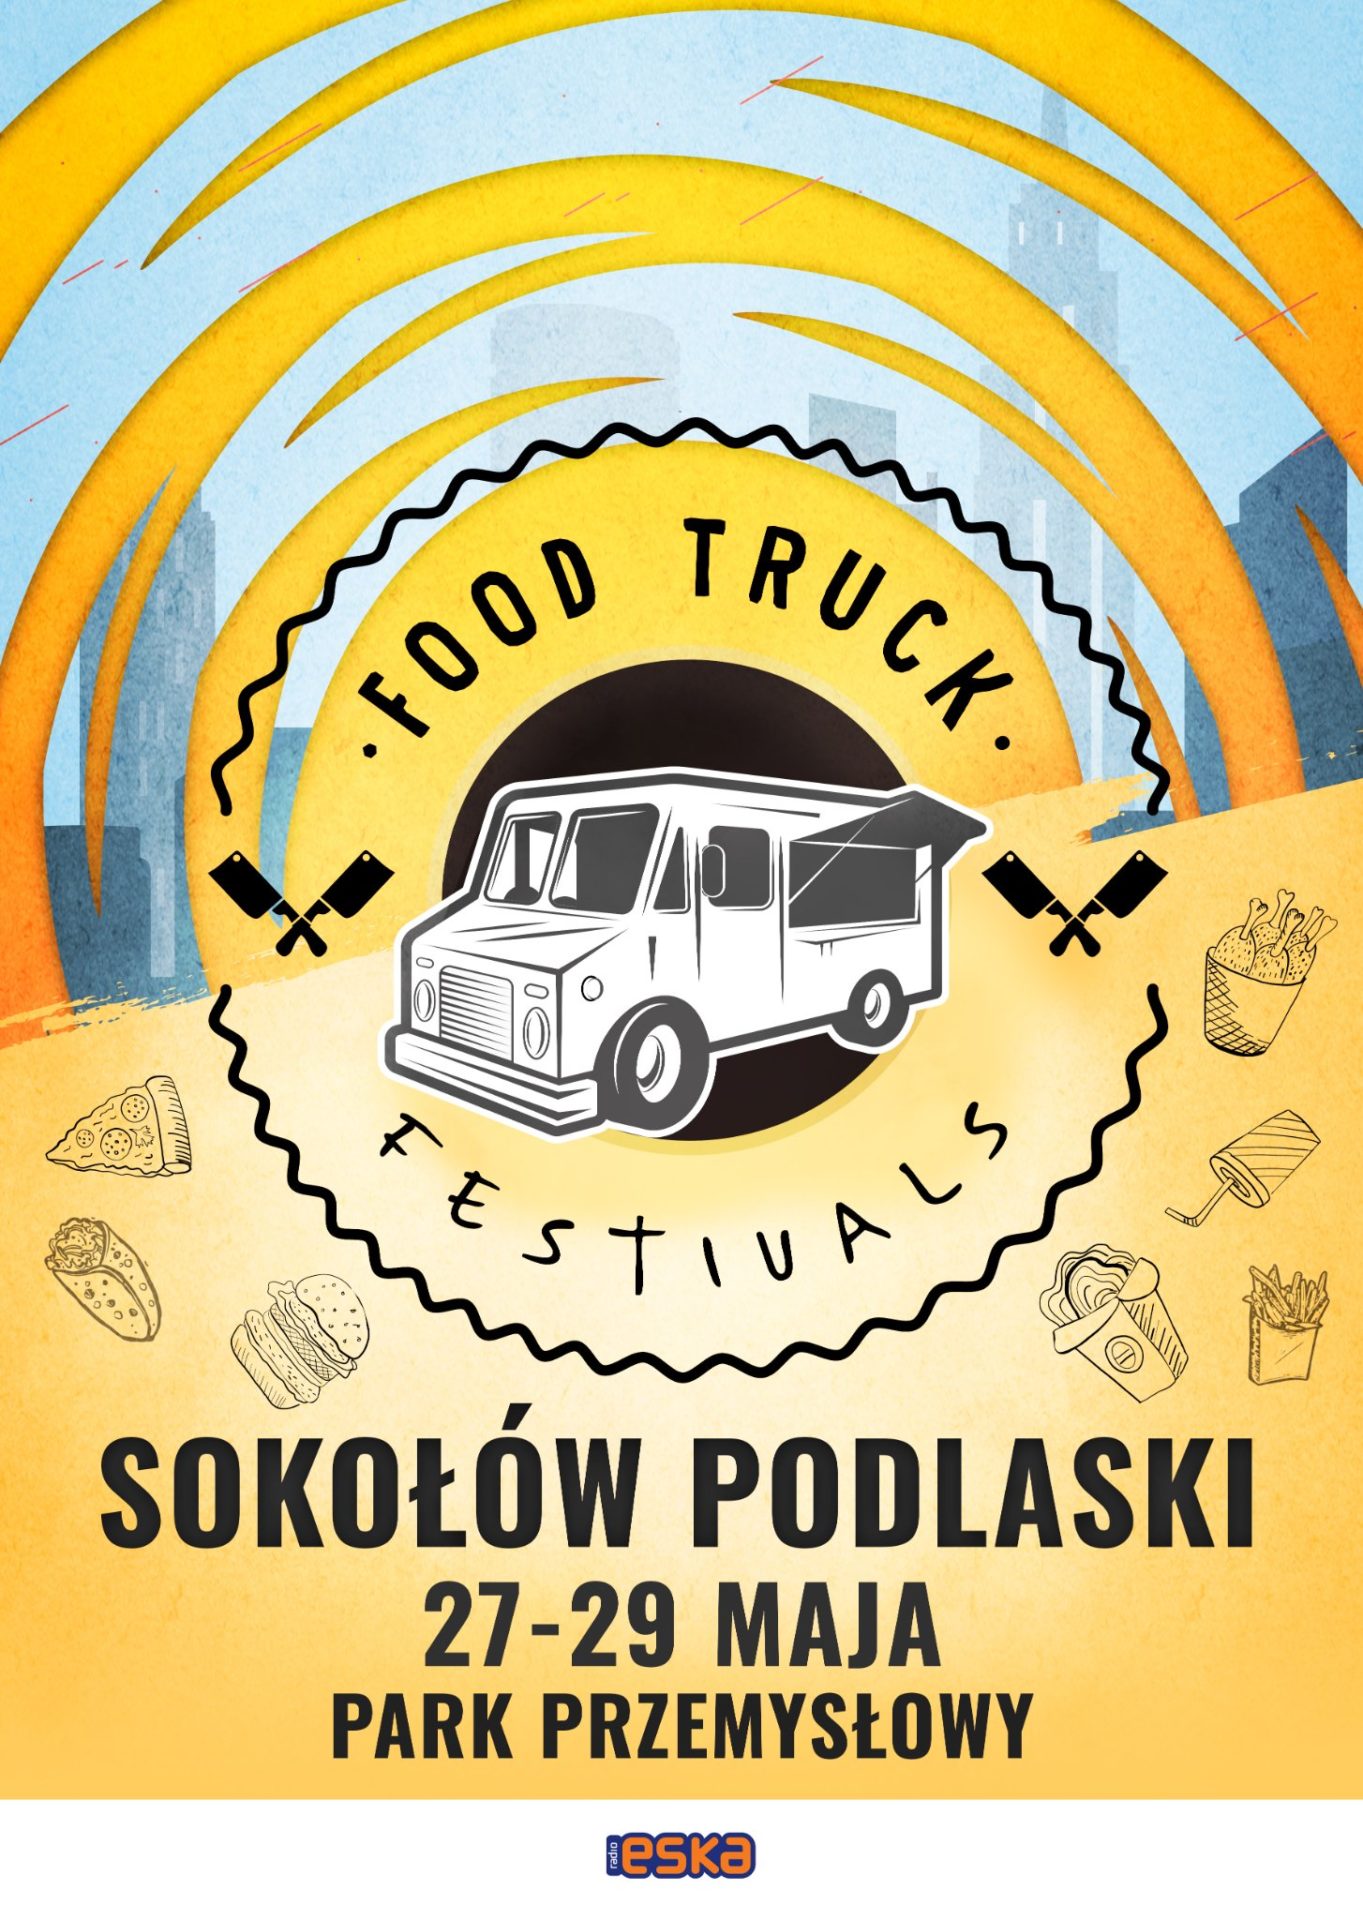 foto: Food Truck Festivals już 27 maja - Sok. podl plakat n 1363x1920